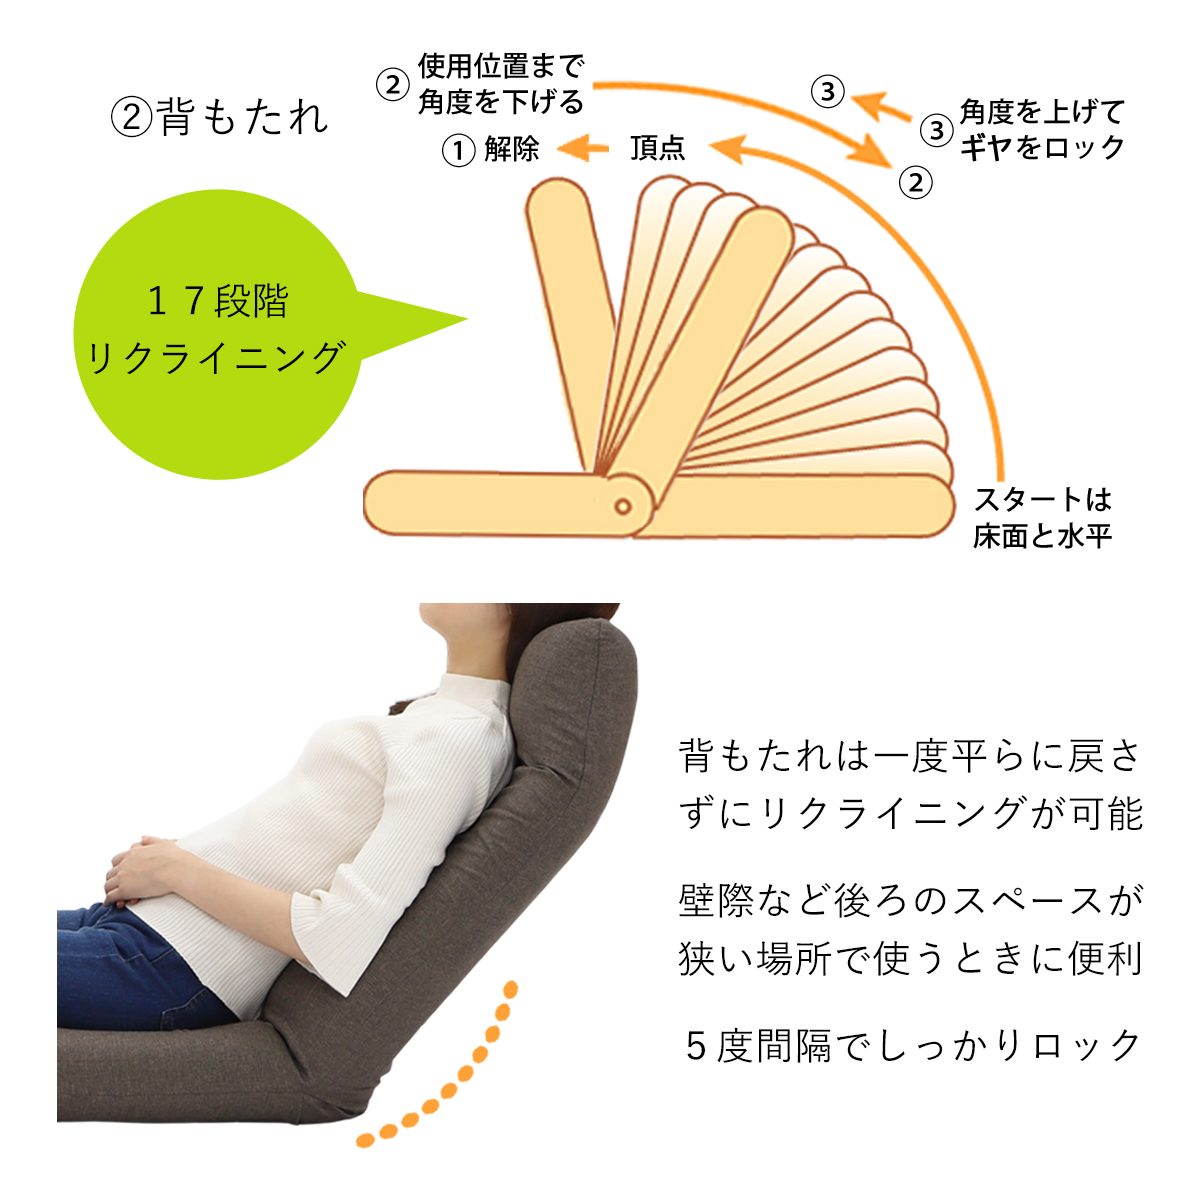 産学連携 ヘッドレスト付ハイバック座椅子2 日本製 ヤマザキ 